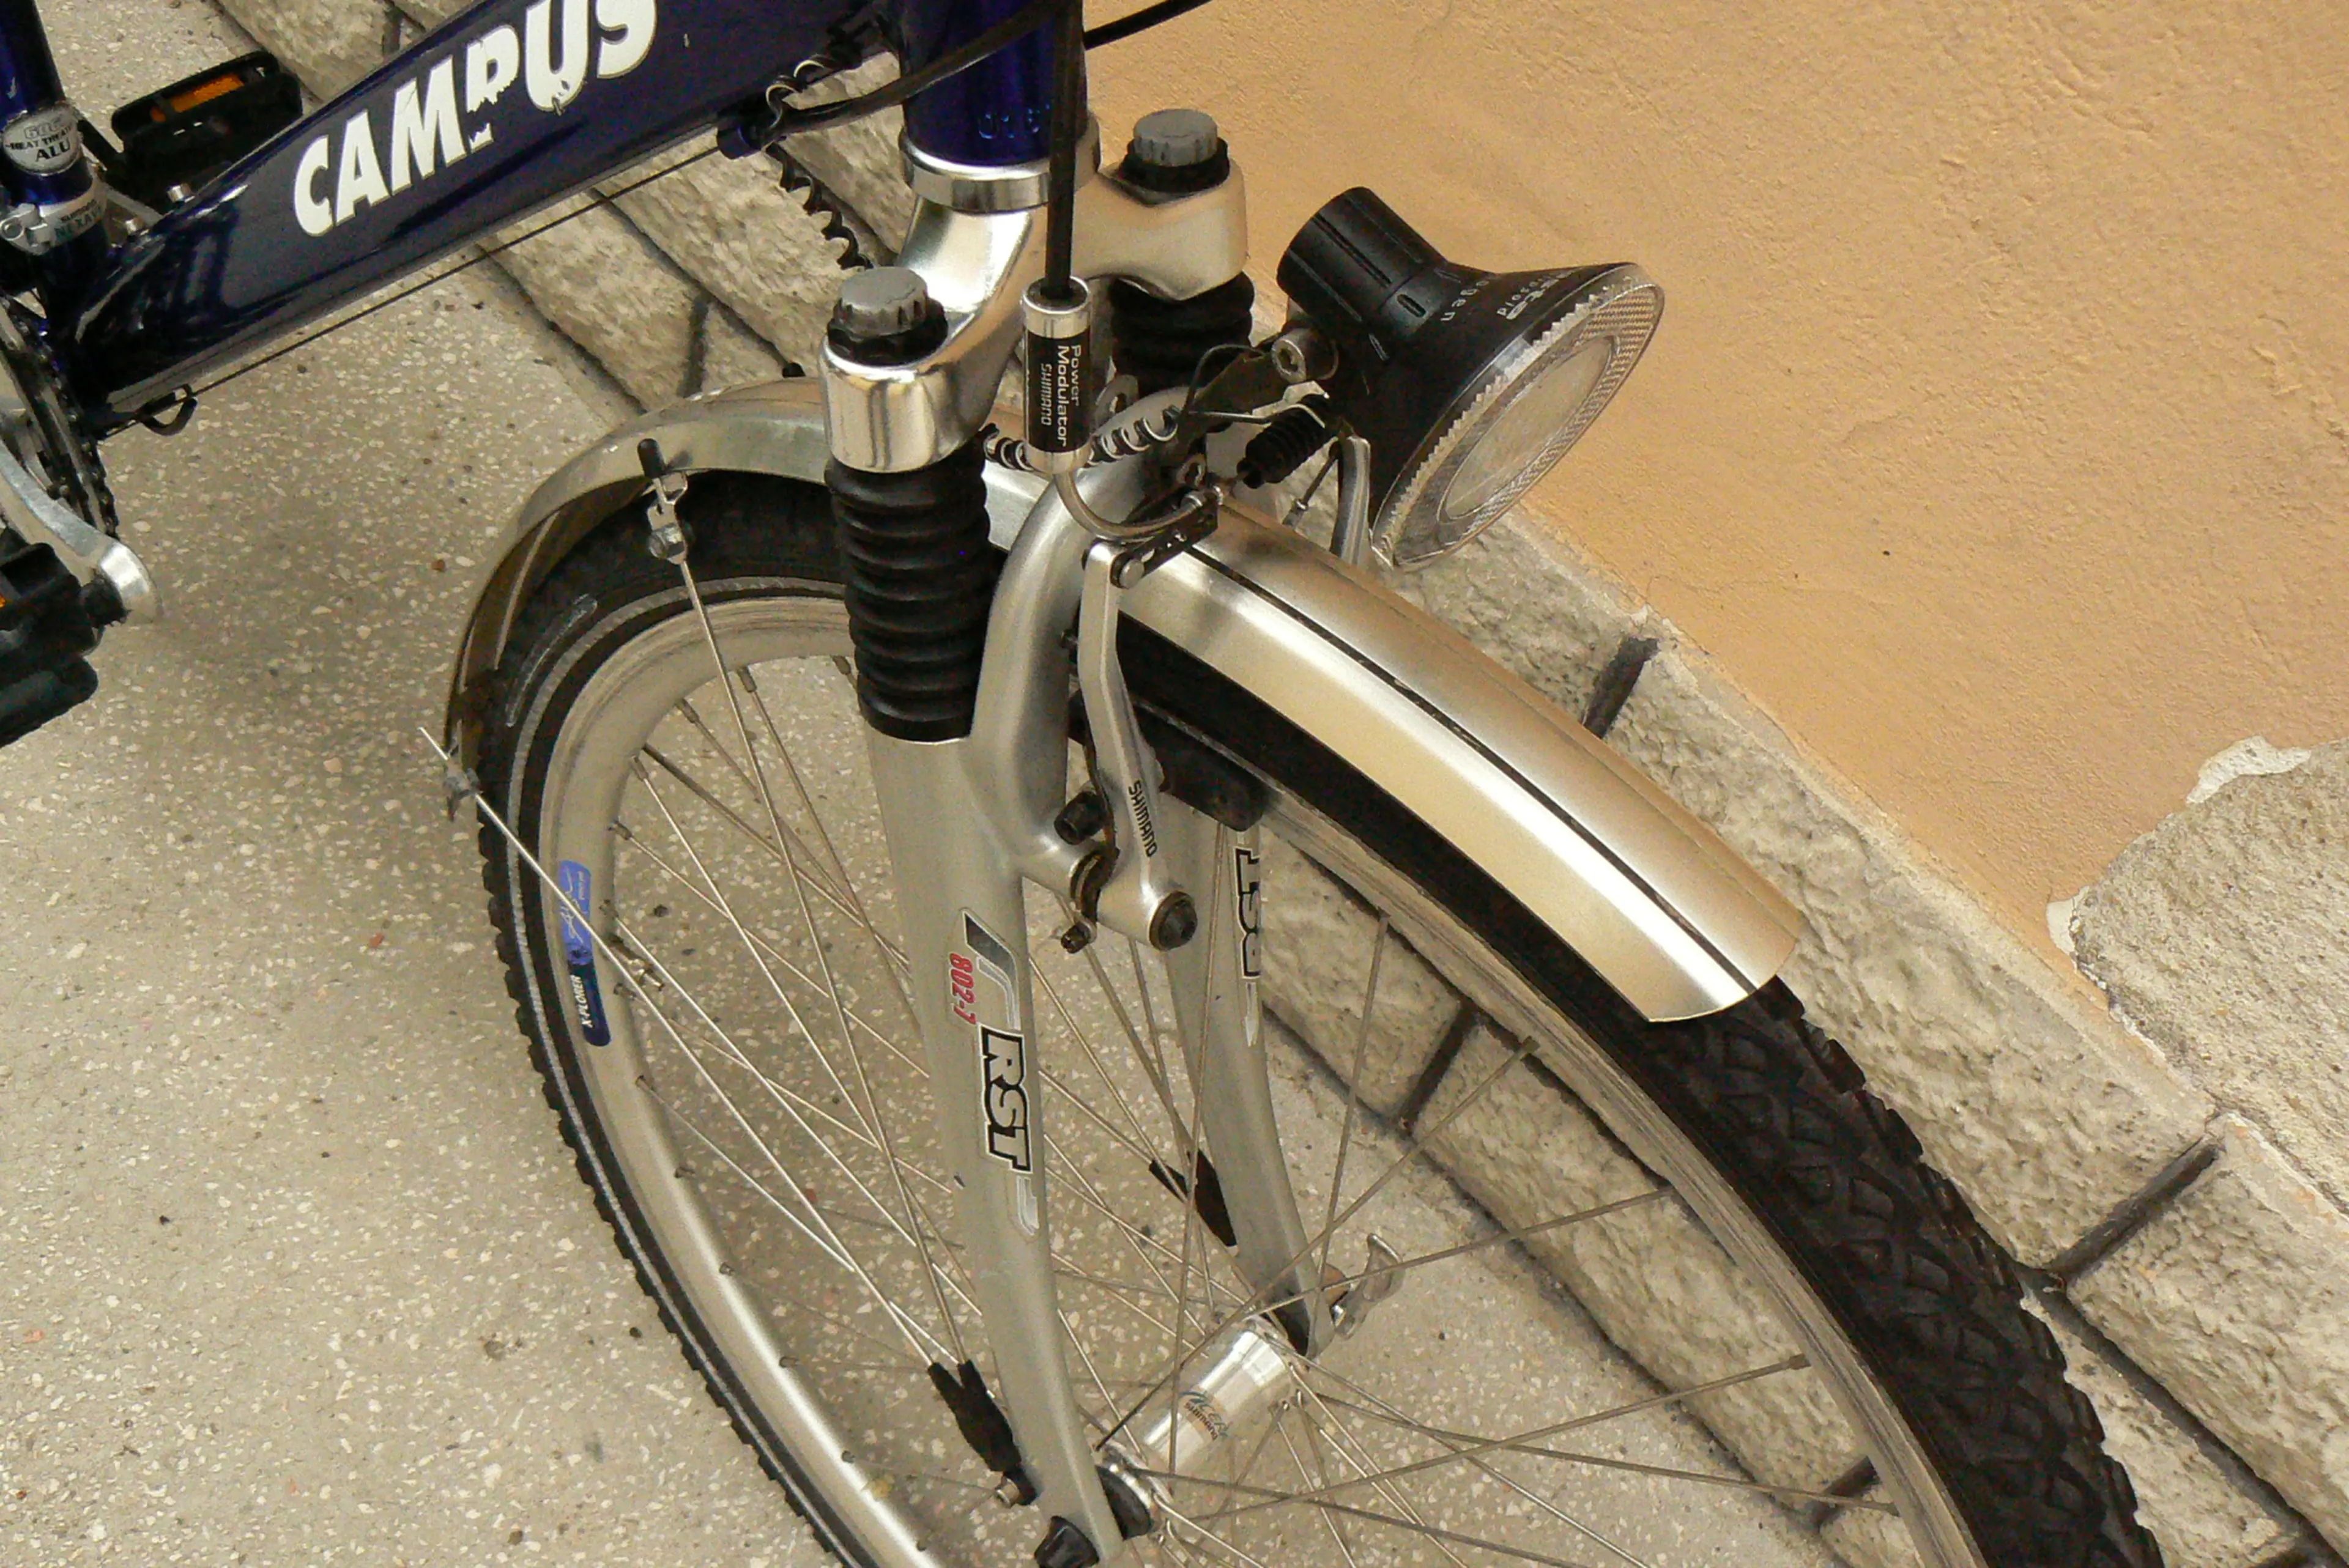 2. Bicicleta Campus